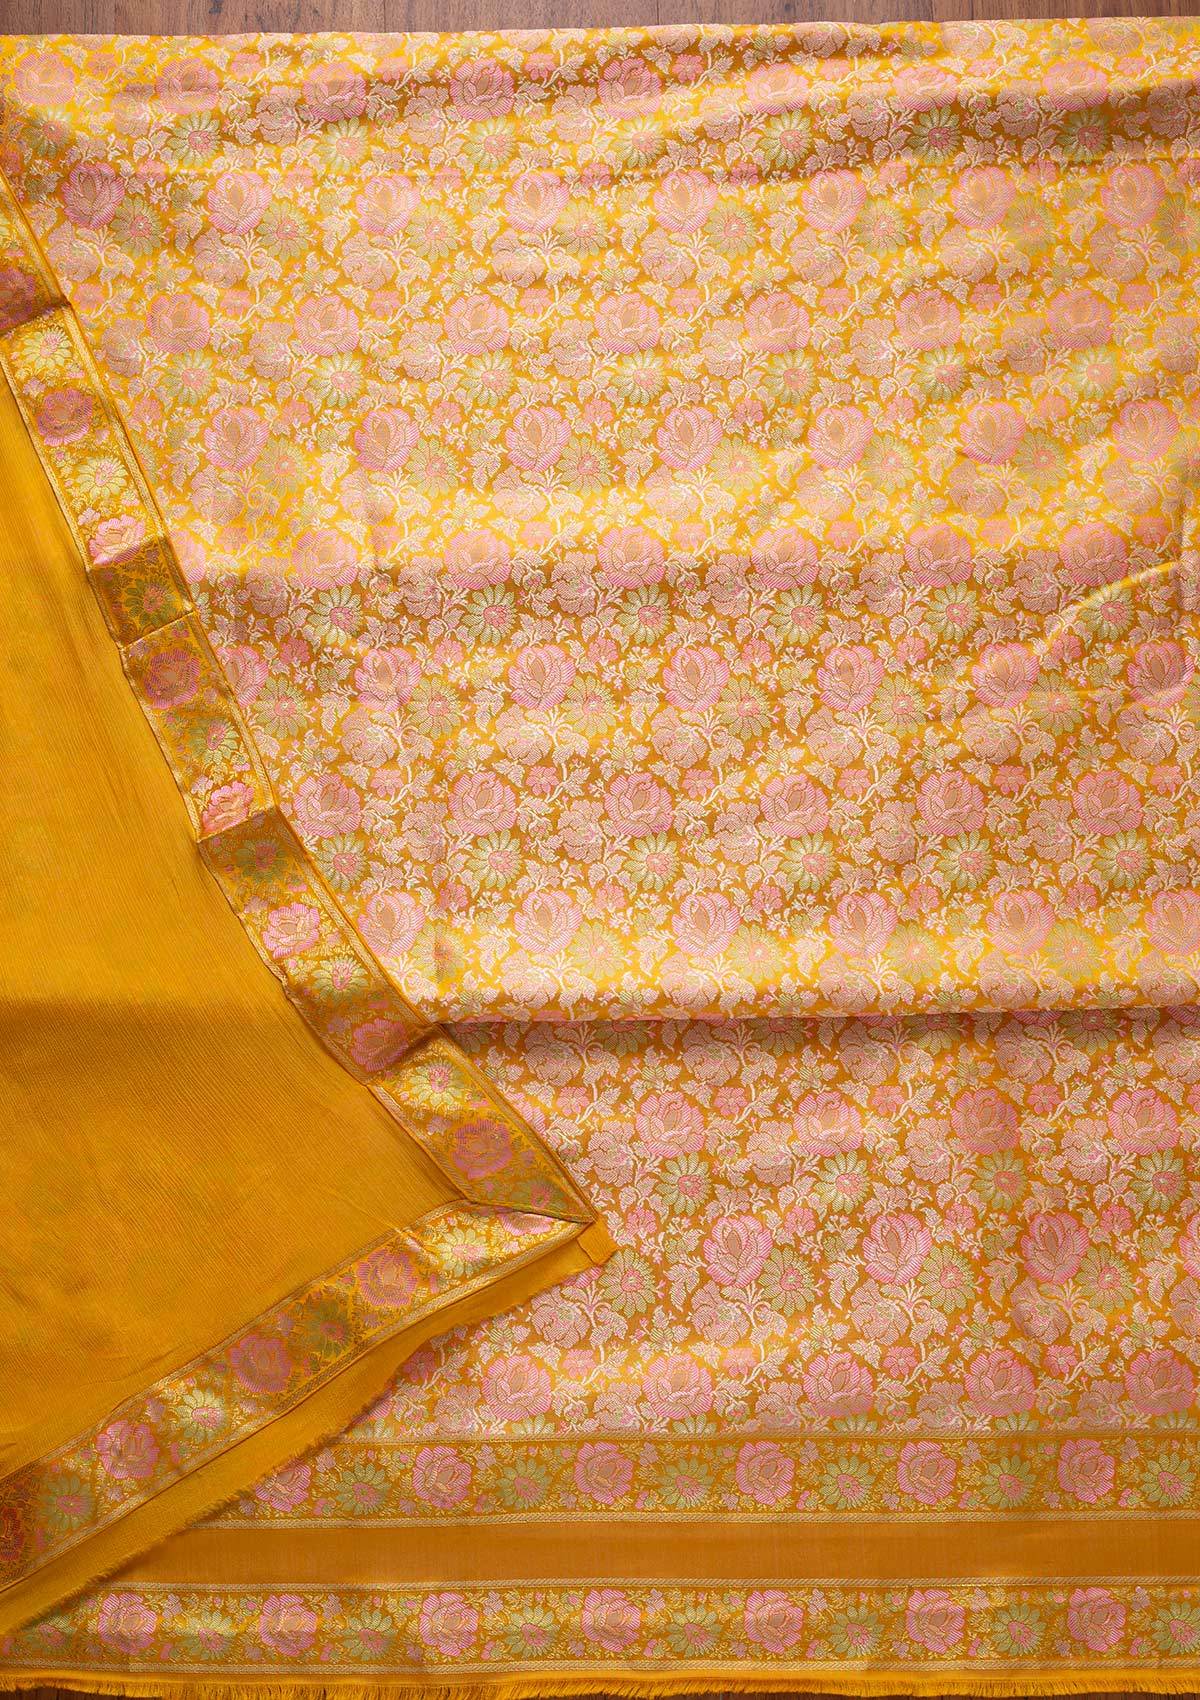 Yellow Zariwork Brocade Designer Unstitched Salwar Suit - koskii